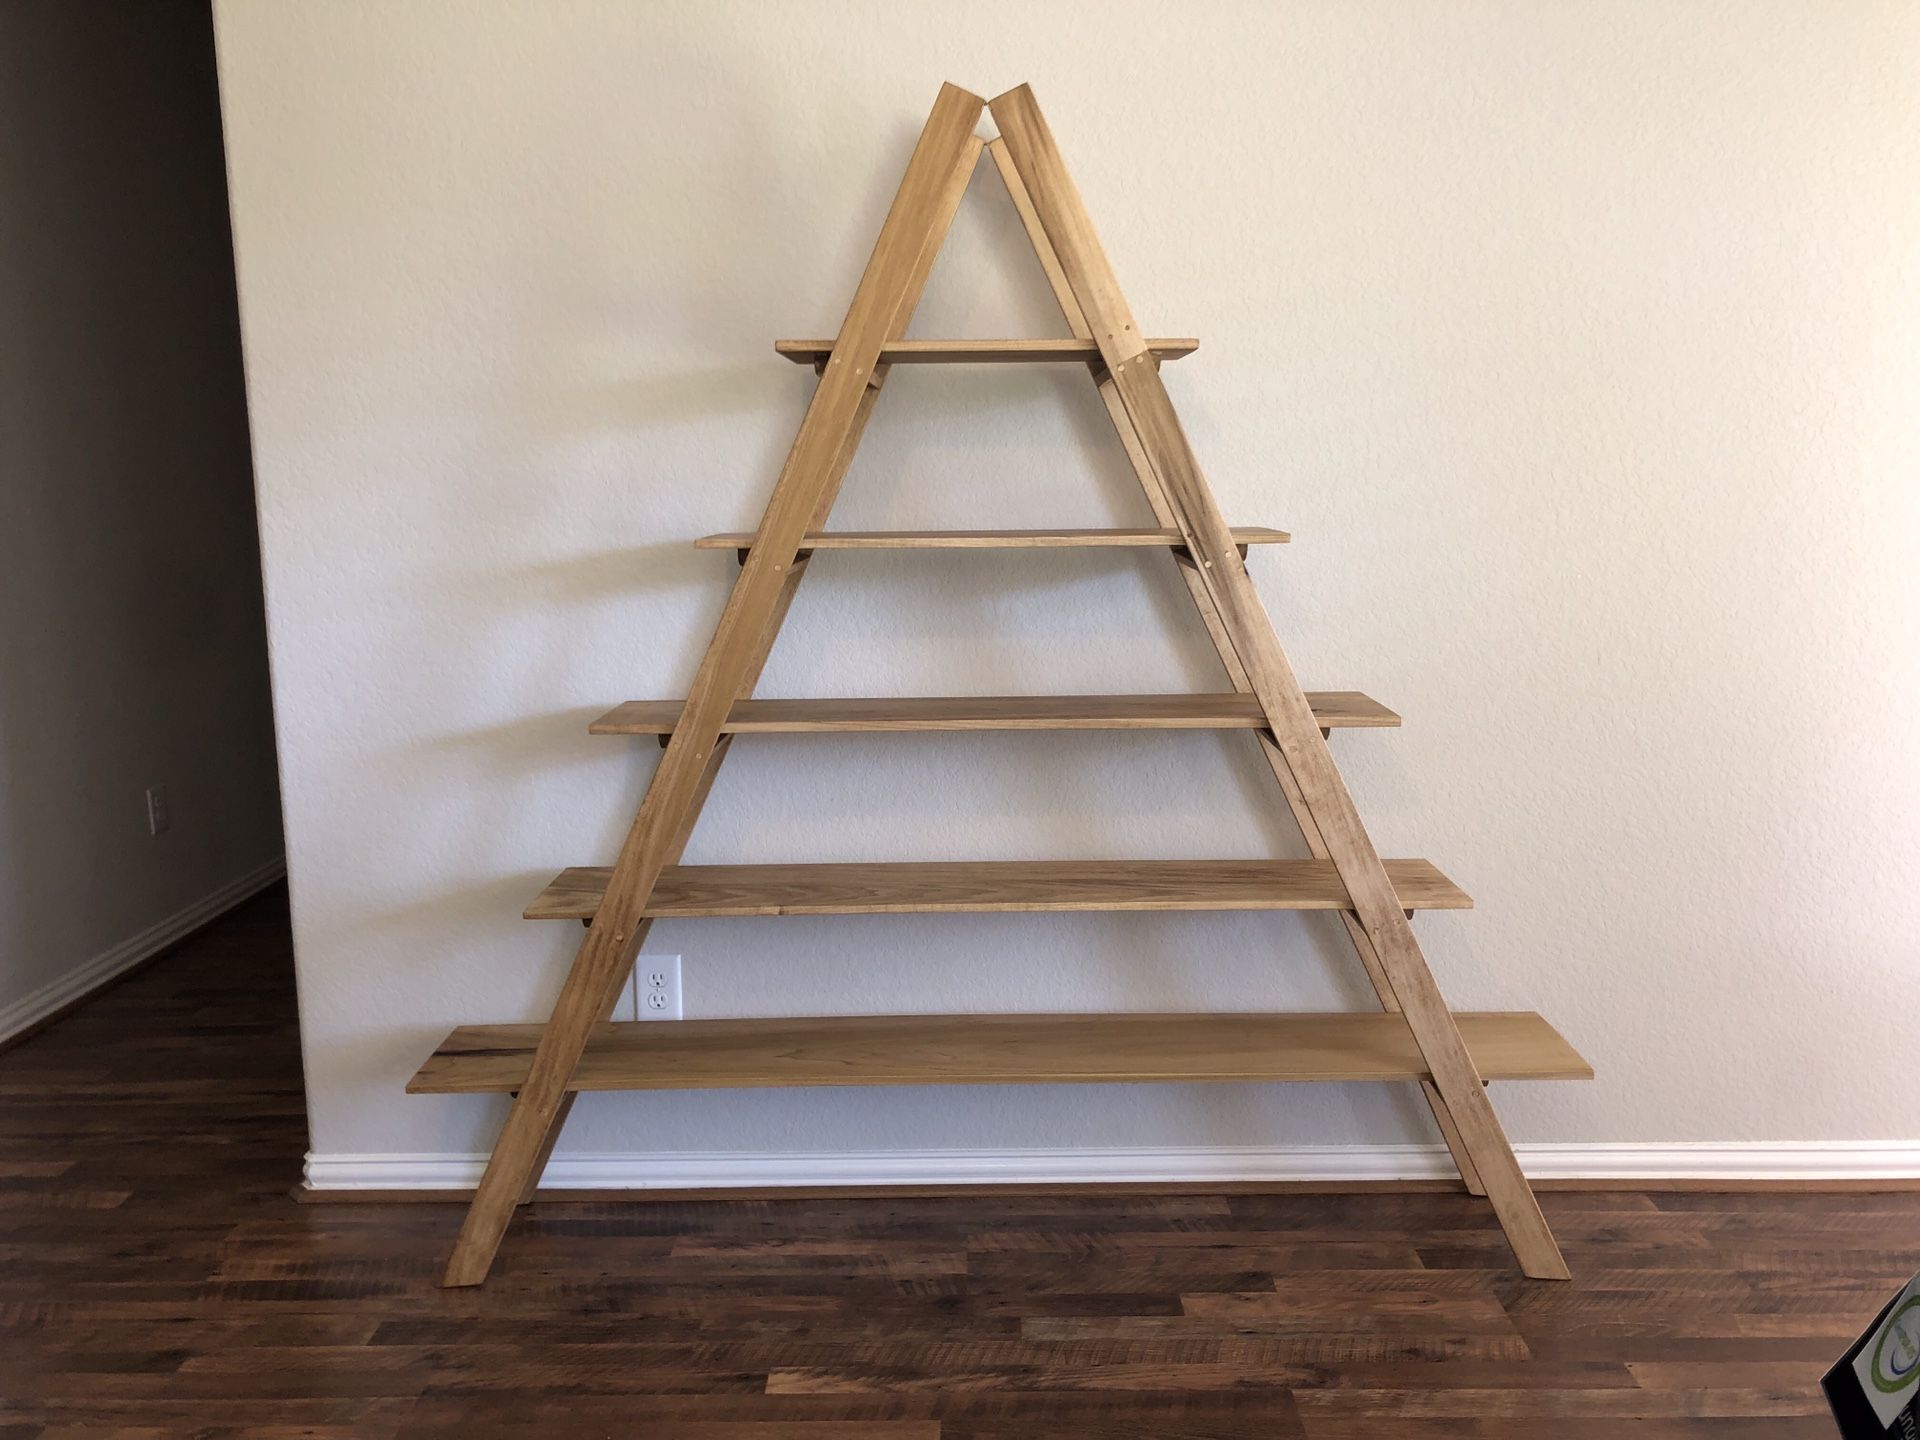 5 tiered wooden Ladder shelf